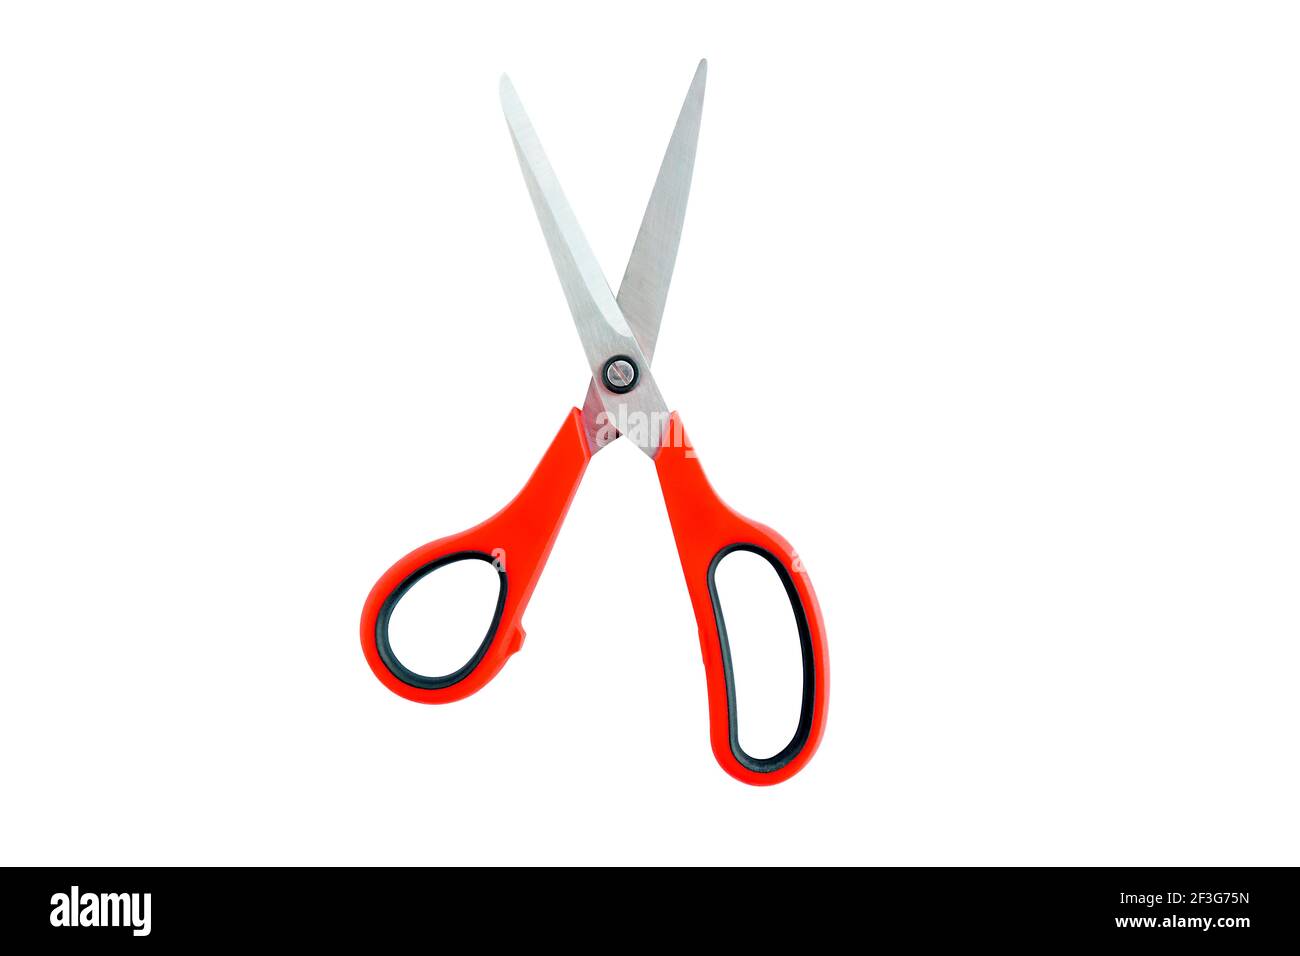 Big scissors. Ножницы с красной рукояткой. Пара ножниц. Найти картинку a pair of Scissors. Пара как ножницы.